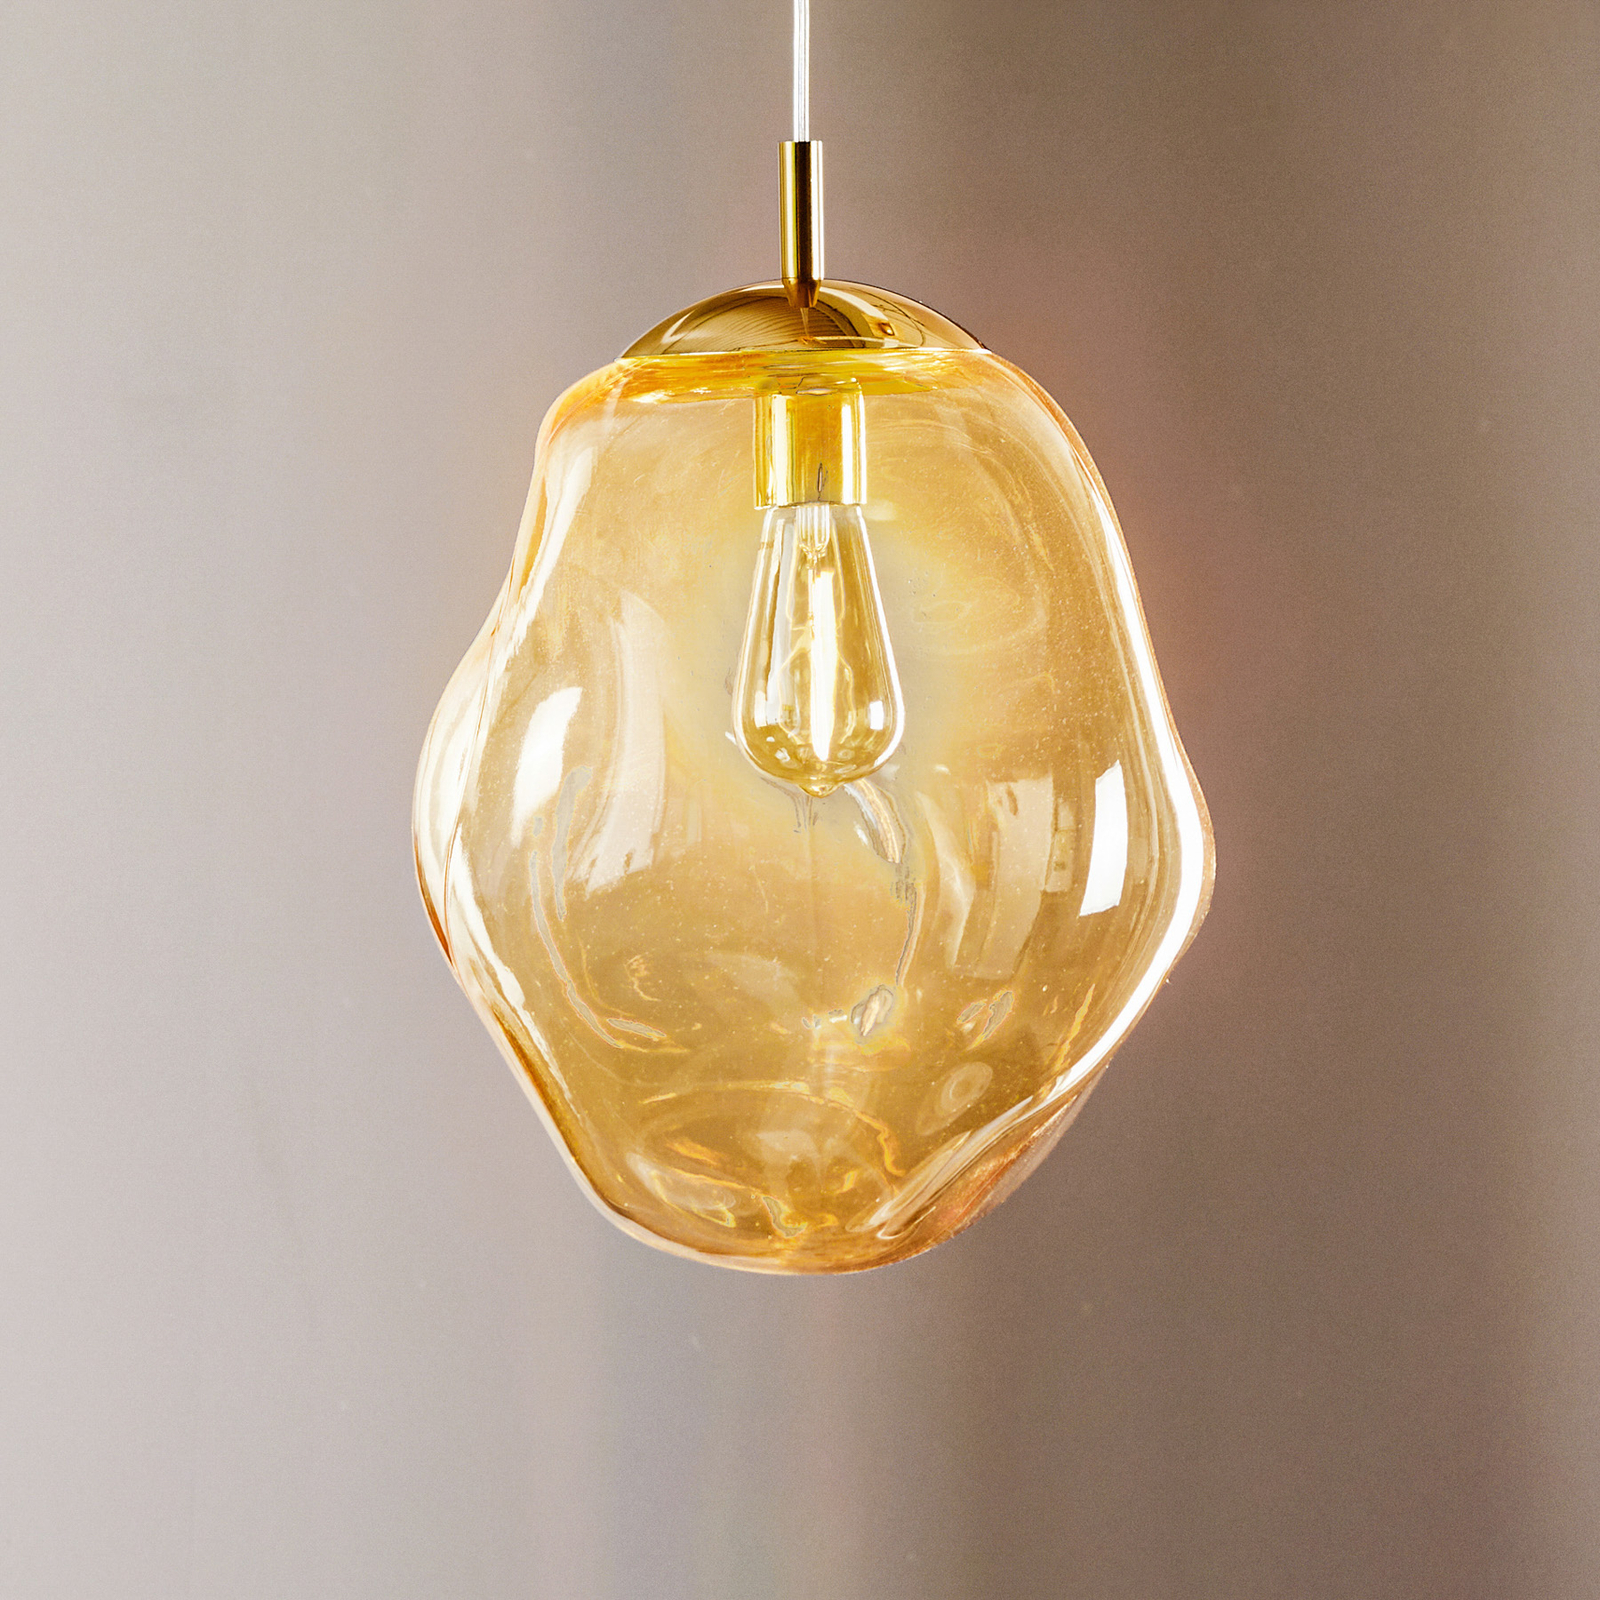 Glazen hanglamp Sol, Ø 35cm, goud/barnsteen